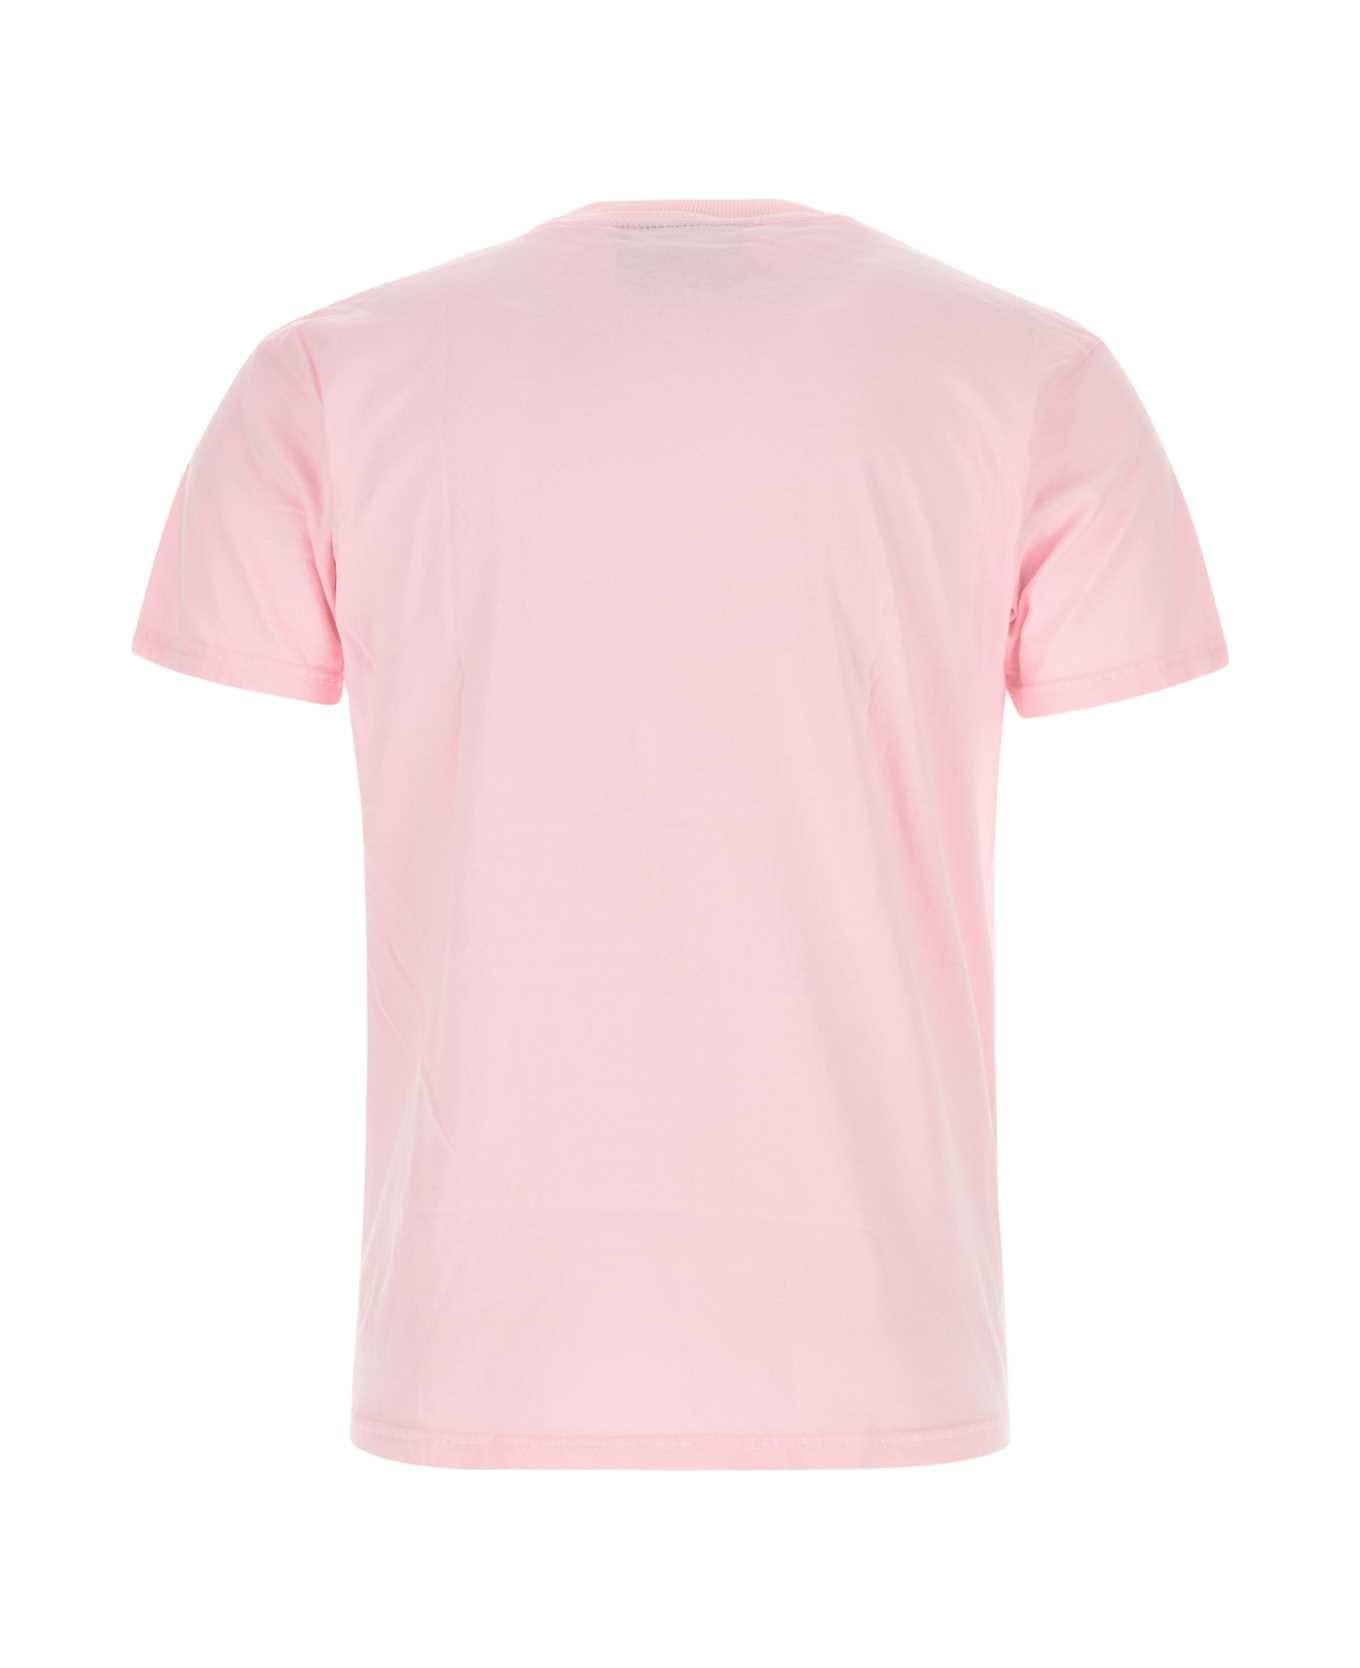 Kidsuper Pink Cotton T-shirt - ABOYPINK